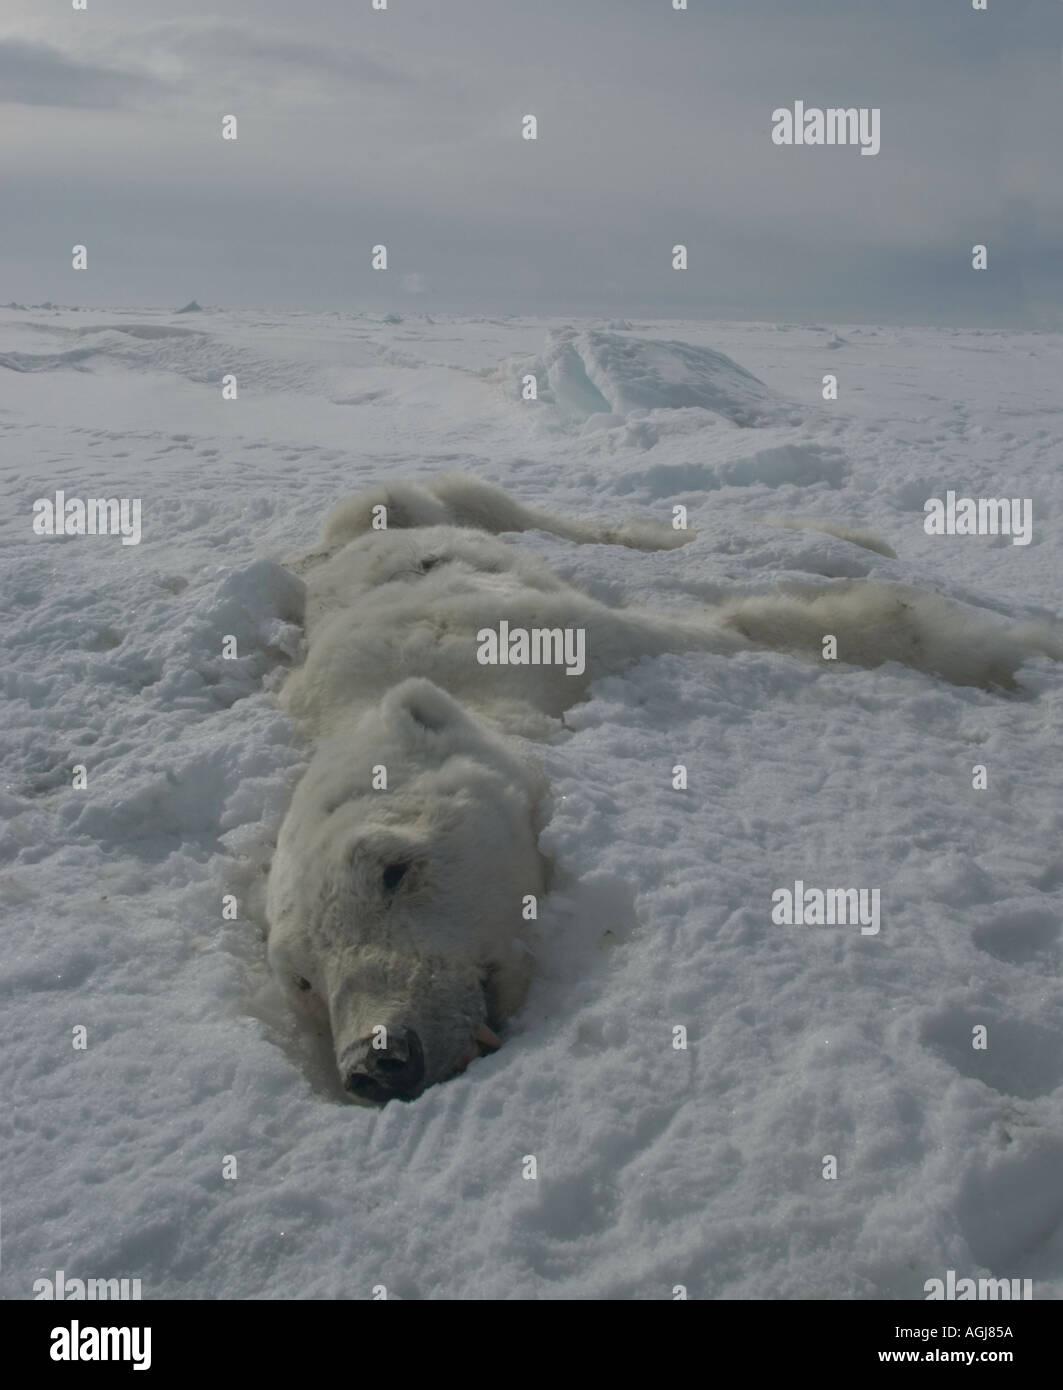 A l'ours morts de faim pendant l'hiver et pourrait devenir une chose commune que le changement climatique diminue que ica mer Banque D'Images